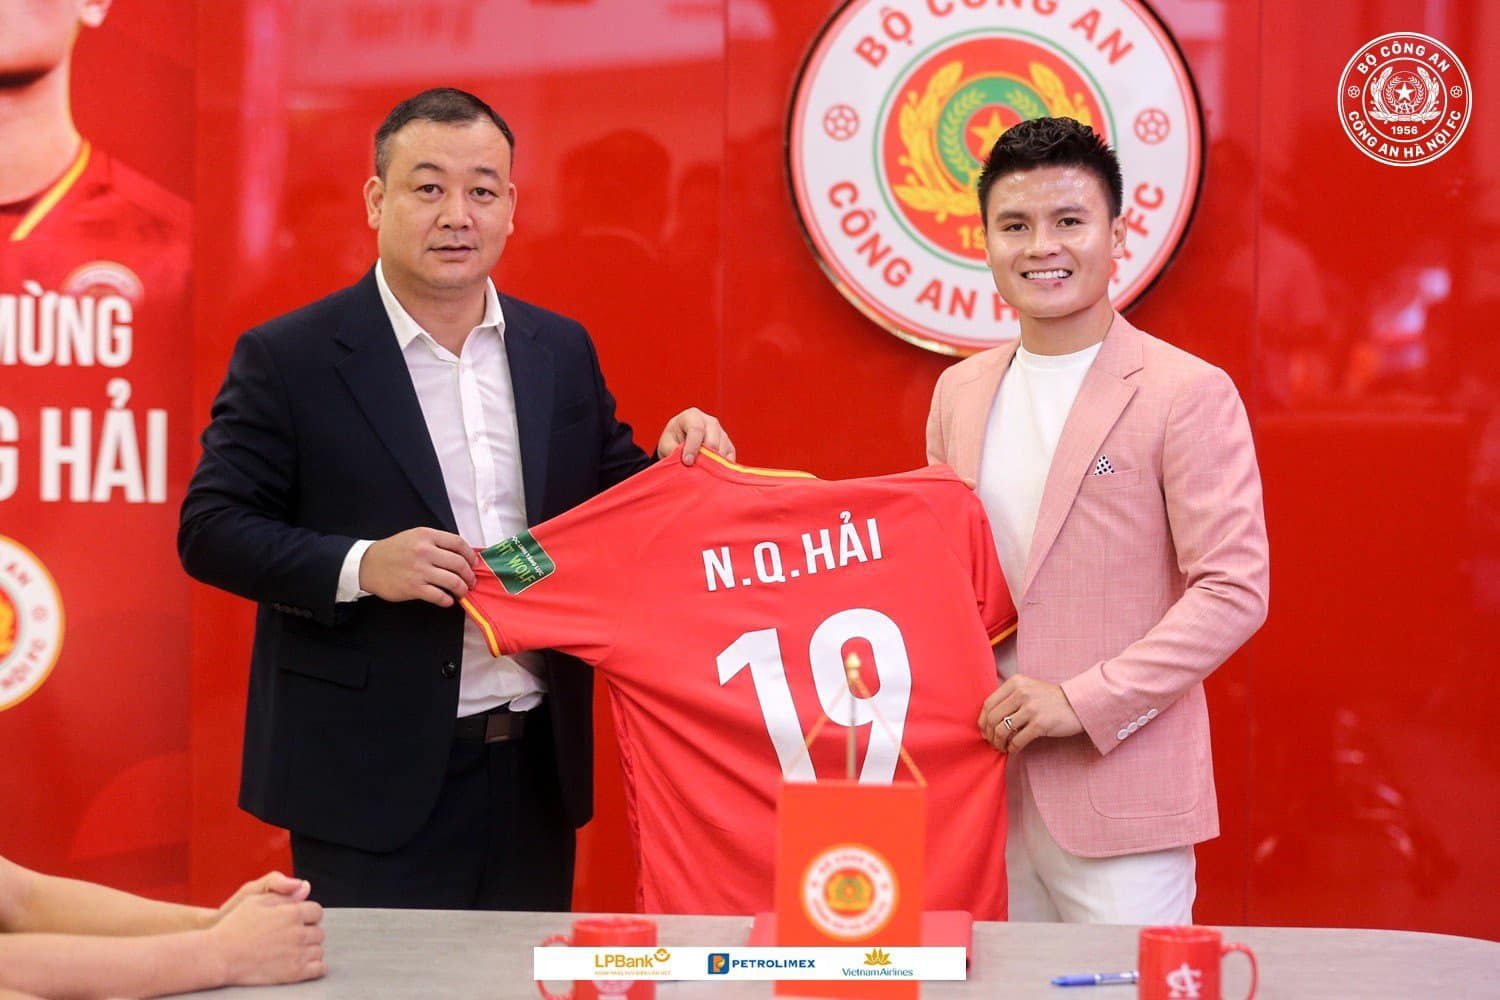 Tiền vệ Quang Hải sẽ khoác áo số 19 tại câu lạc bộ Công an Hà Nội. Ảnh: CAHN FC